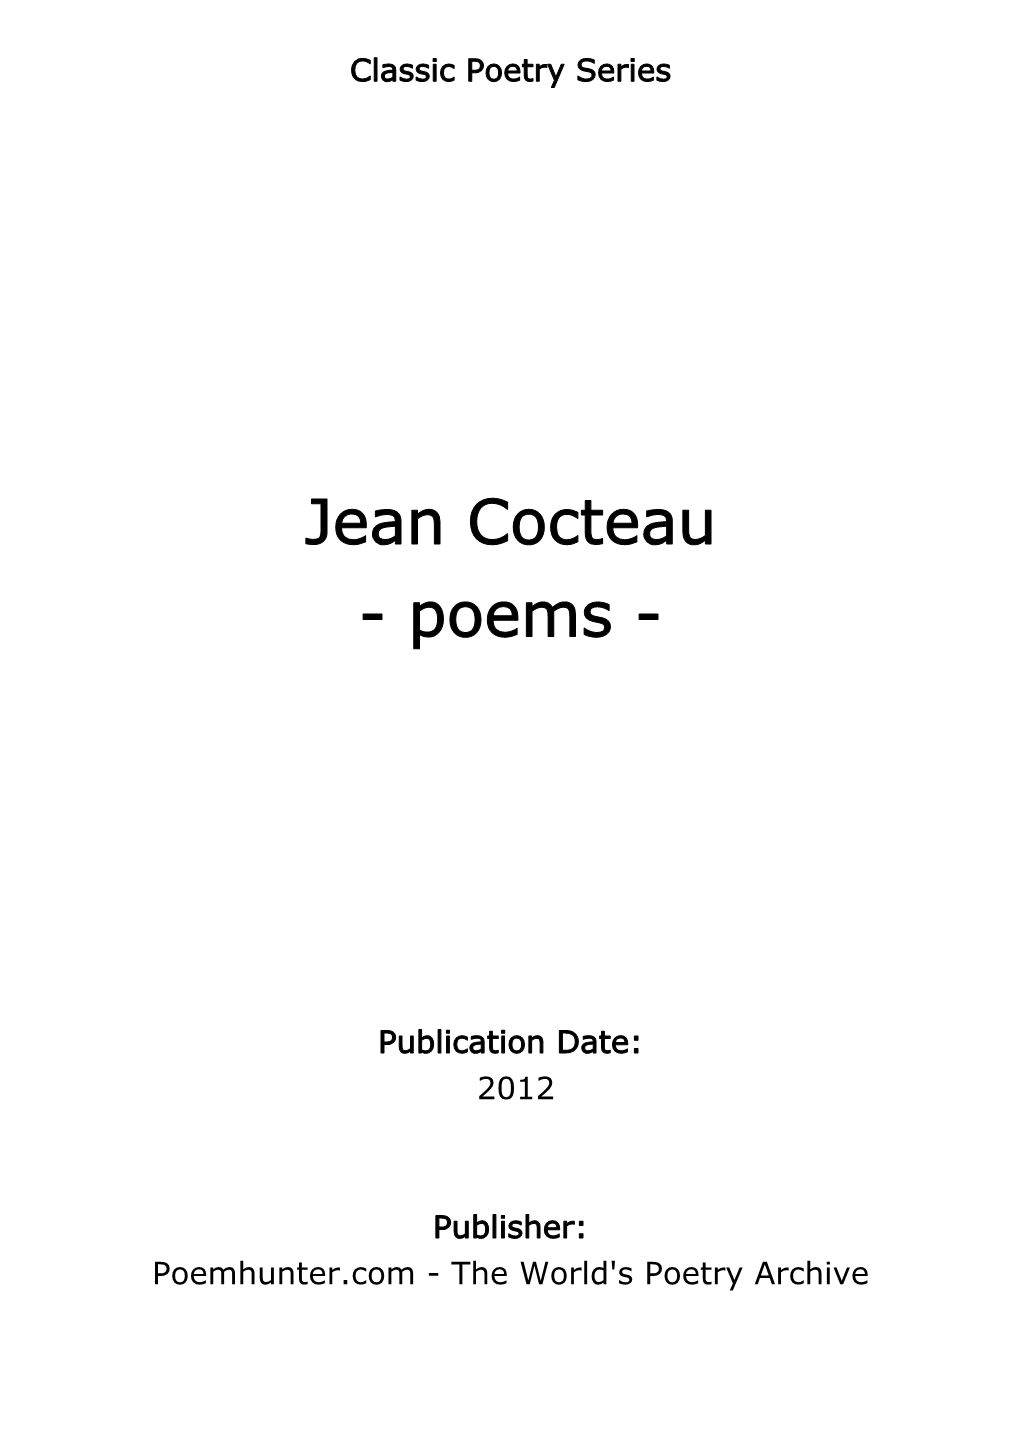 Jean Cocteau - Poems